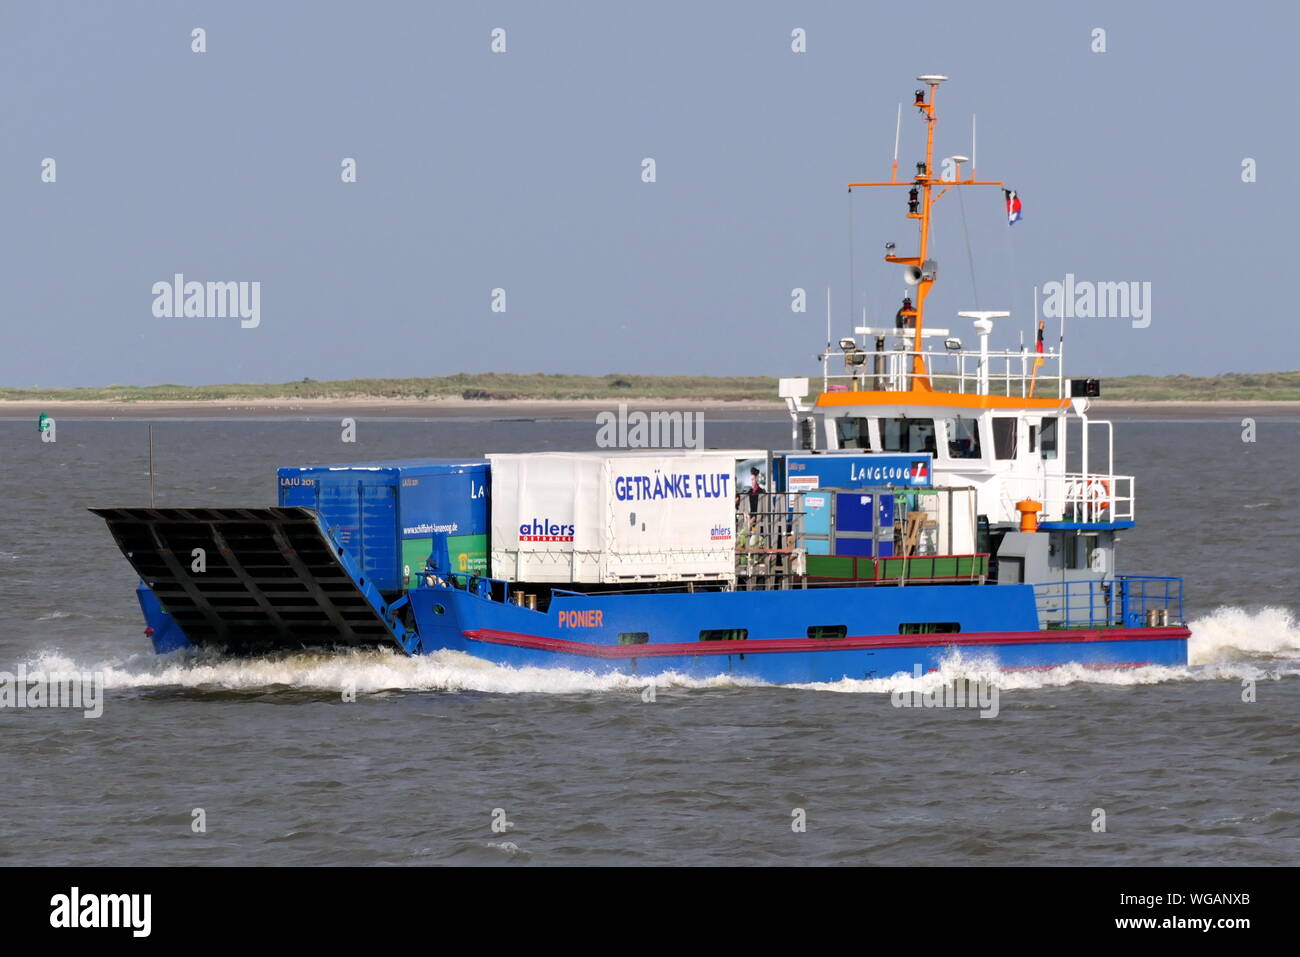 Le ferry fret Pionier intervenu le 24 juin 2019 le port de l'île Langeoog allemand sur la côte de la mer du Nord. Banque D'Images